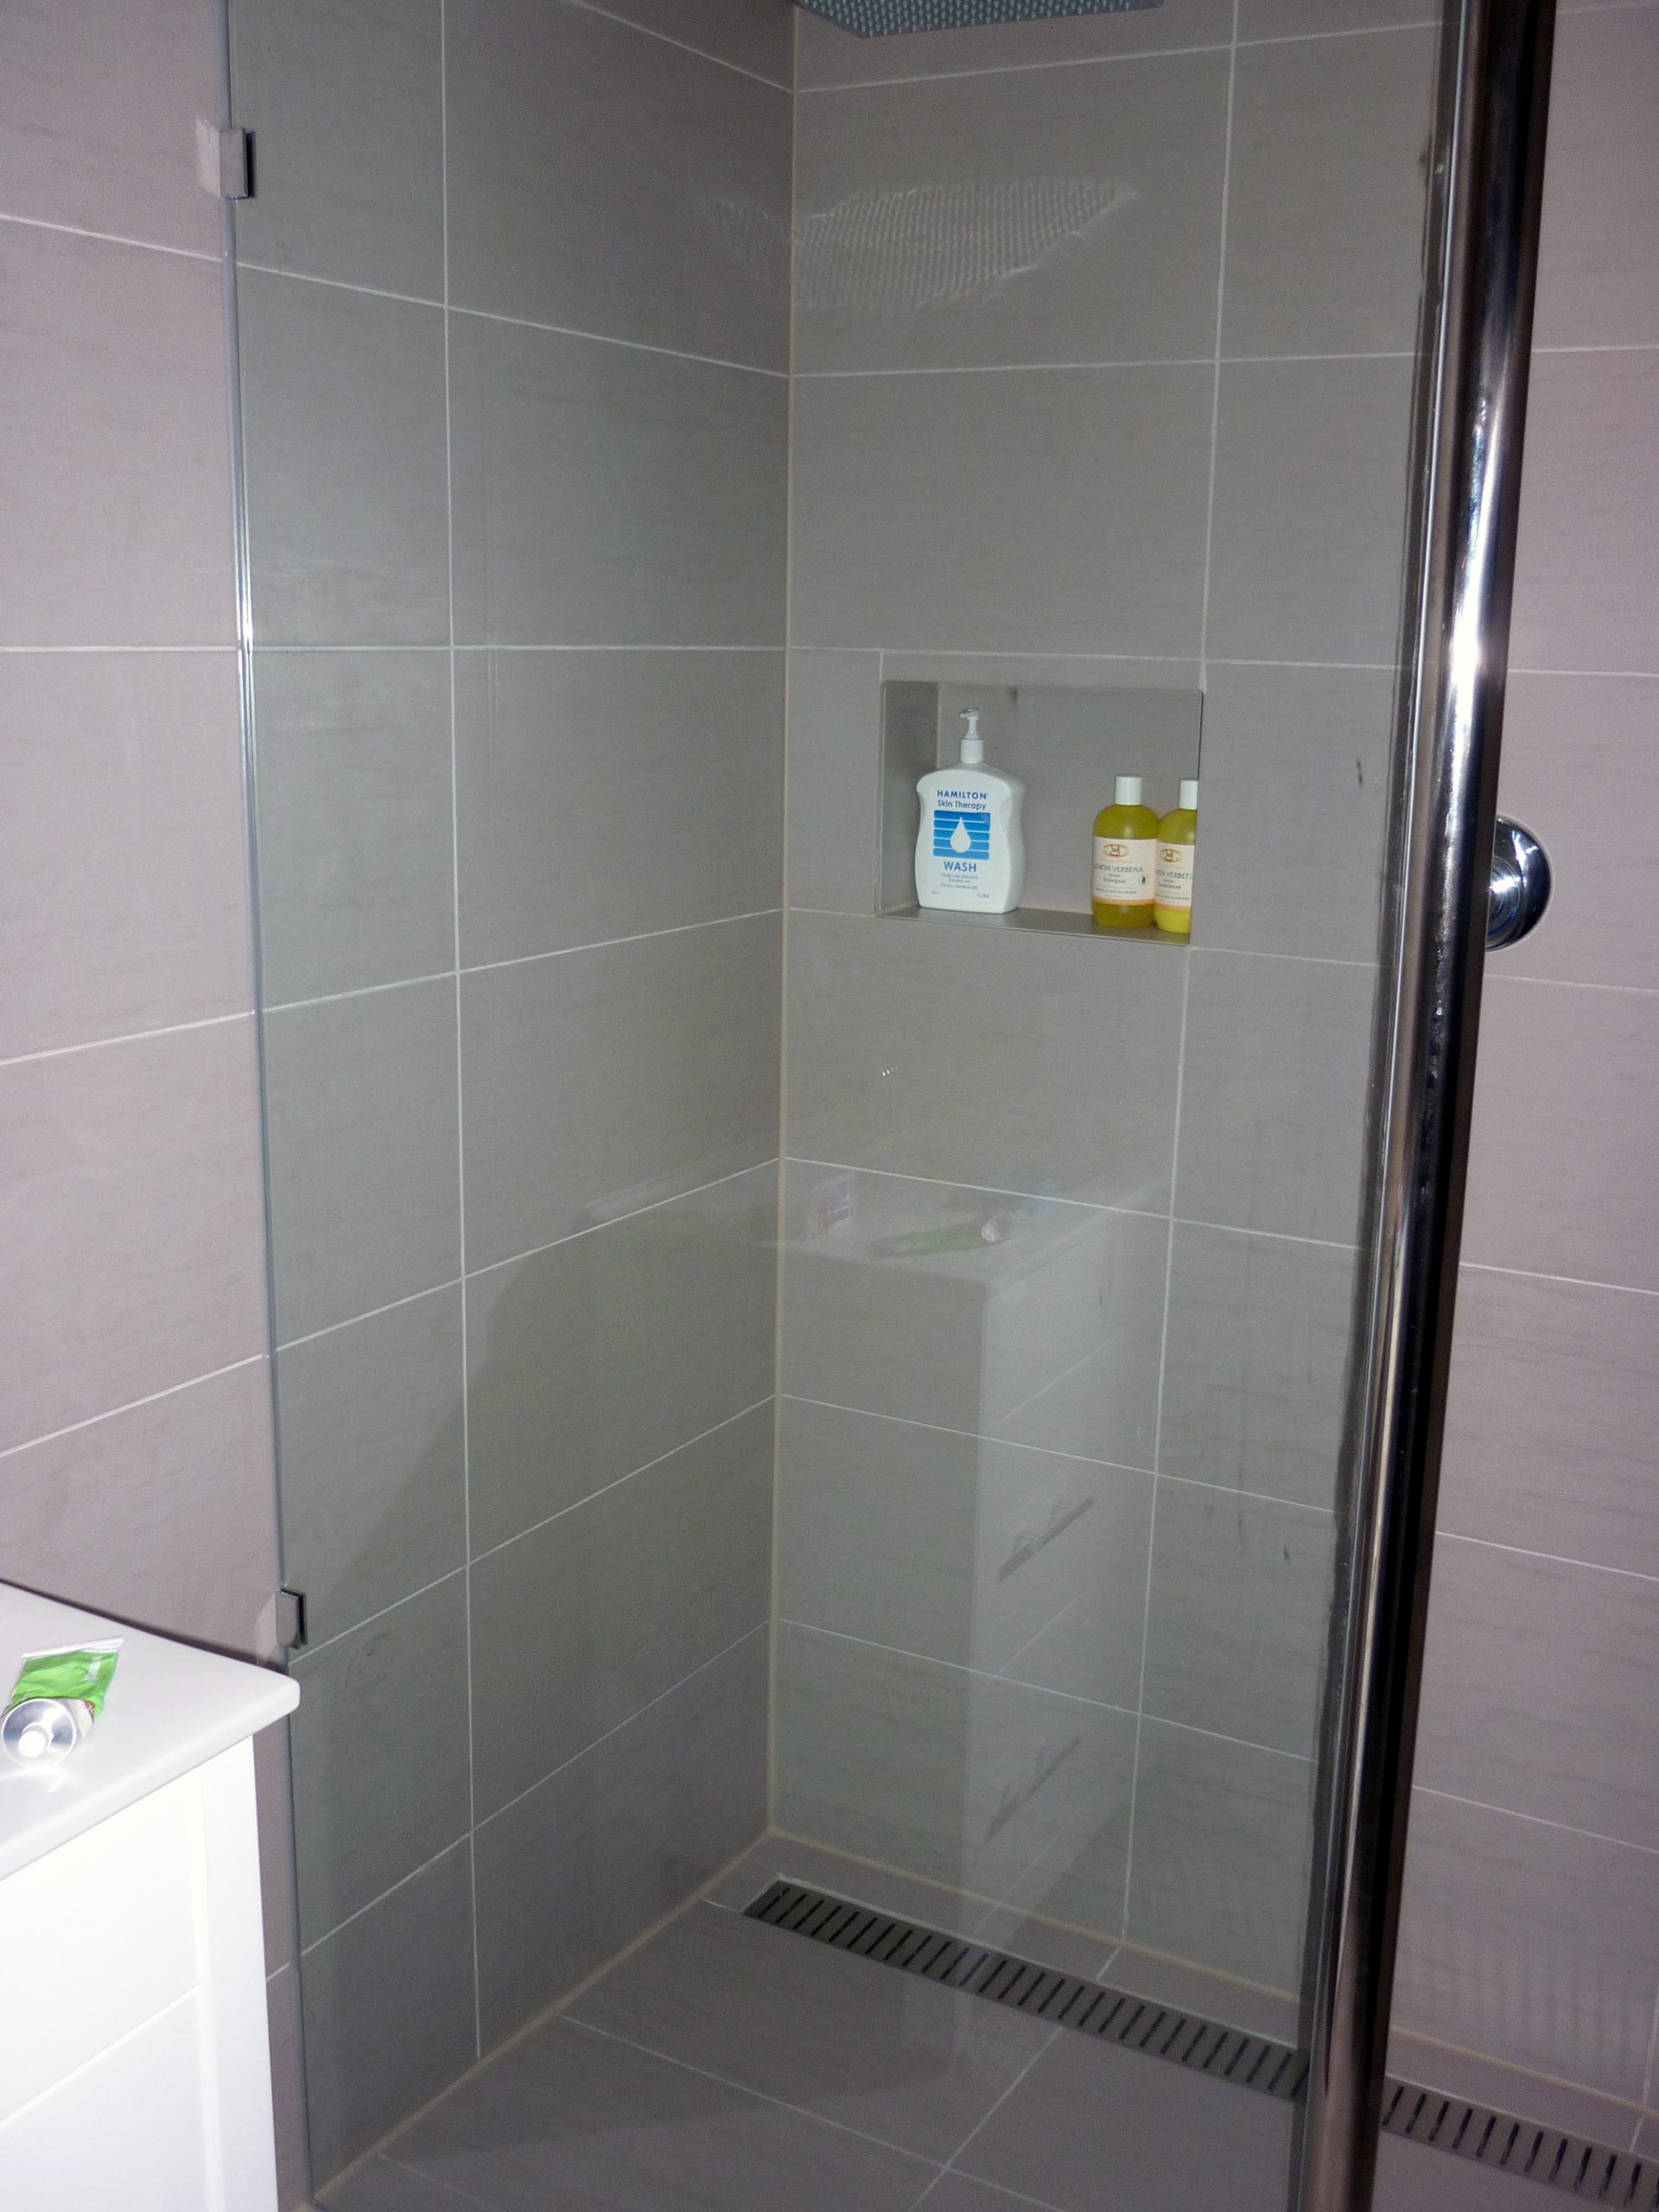 Bathroom Showerscreen